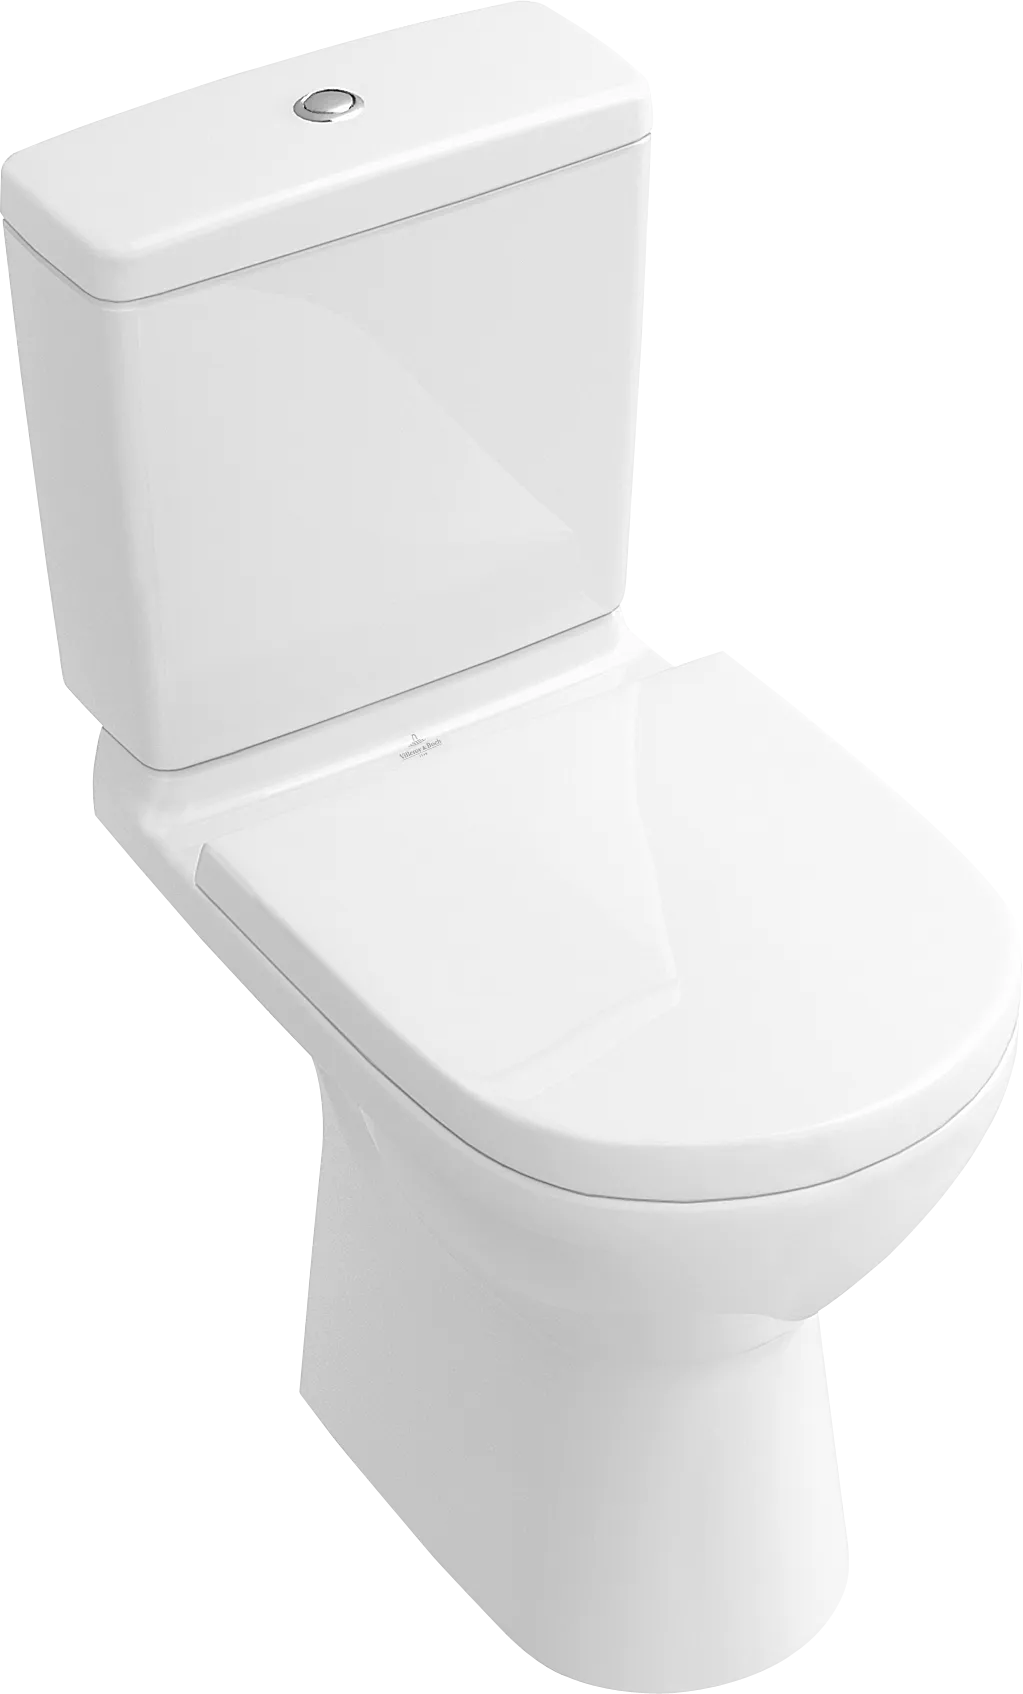 Obrázek VILLEROY BOCH O.novo umyvatelné WC bez ráfku pro kombinaci, stojící, bílé Alpine #5661R001